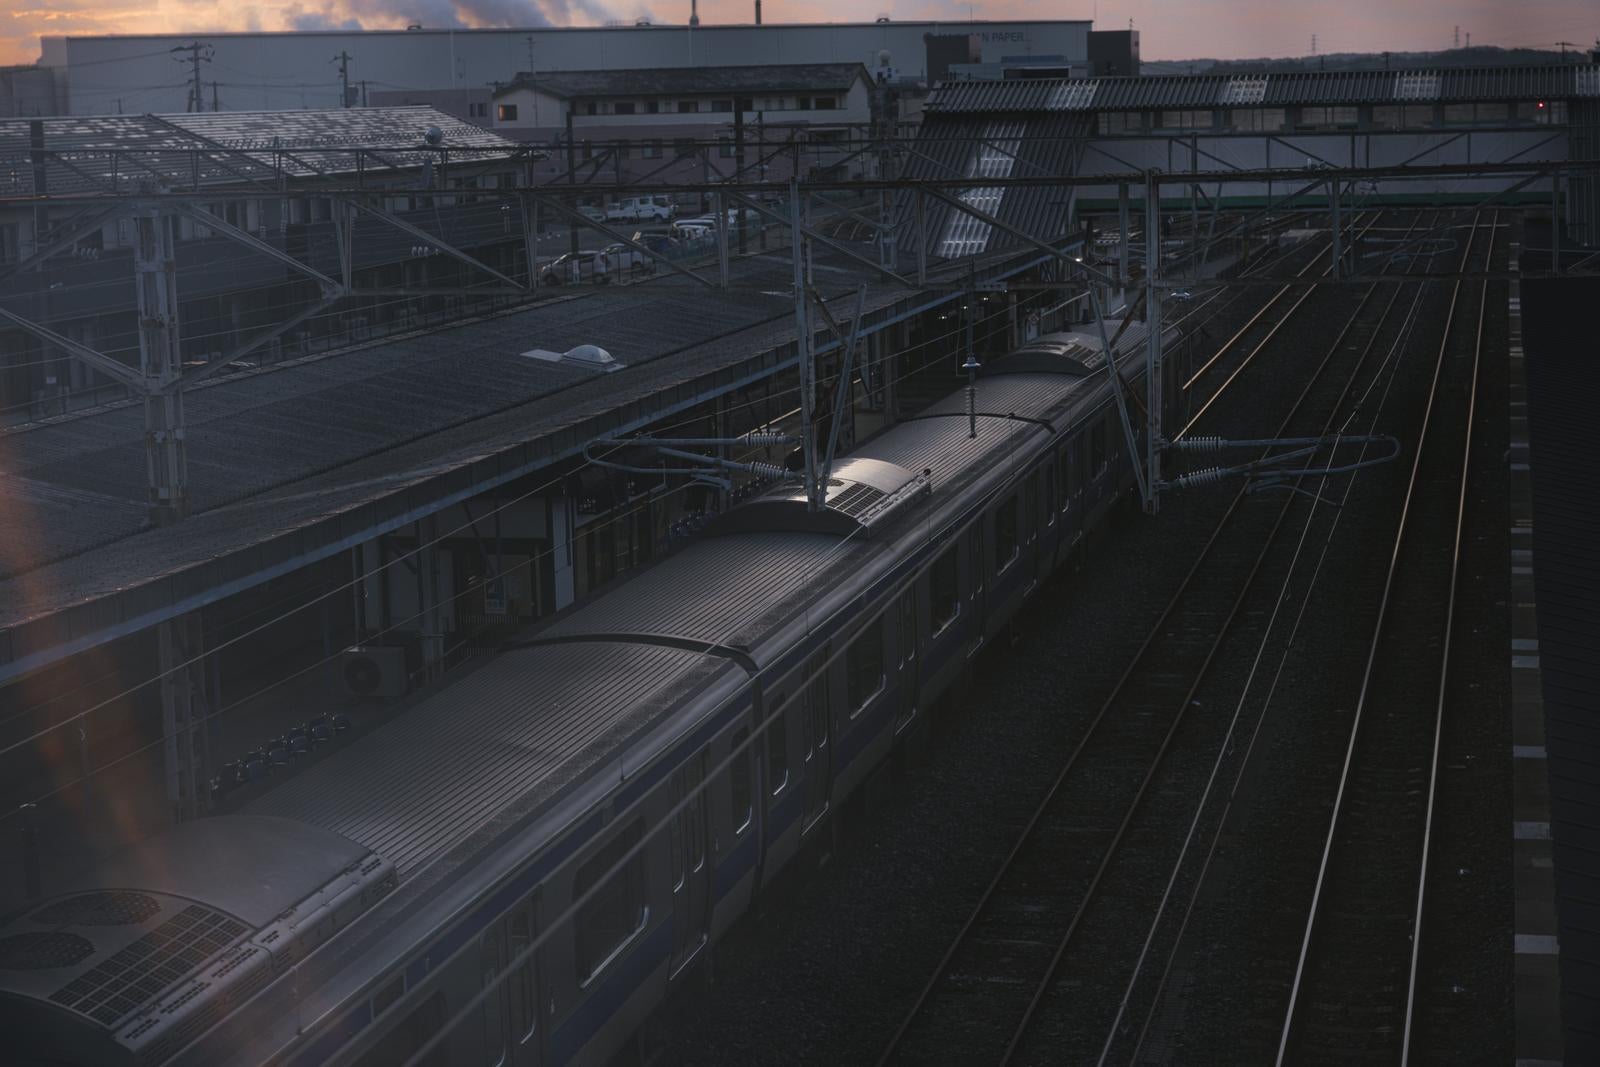 「原ノ町駅のホームに停まる電車」の写真